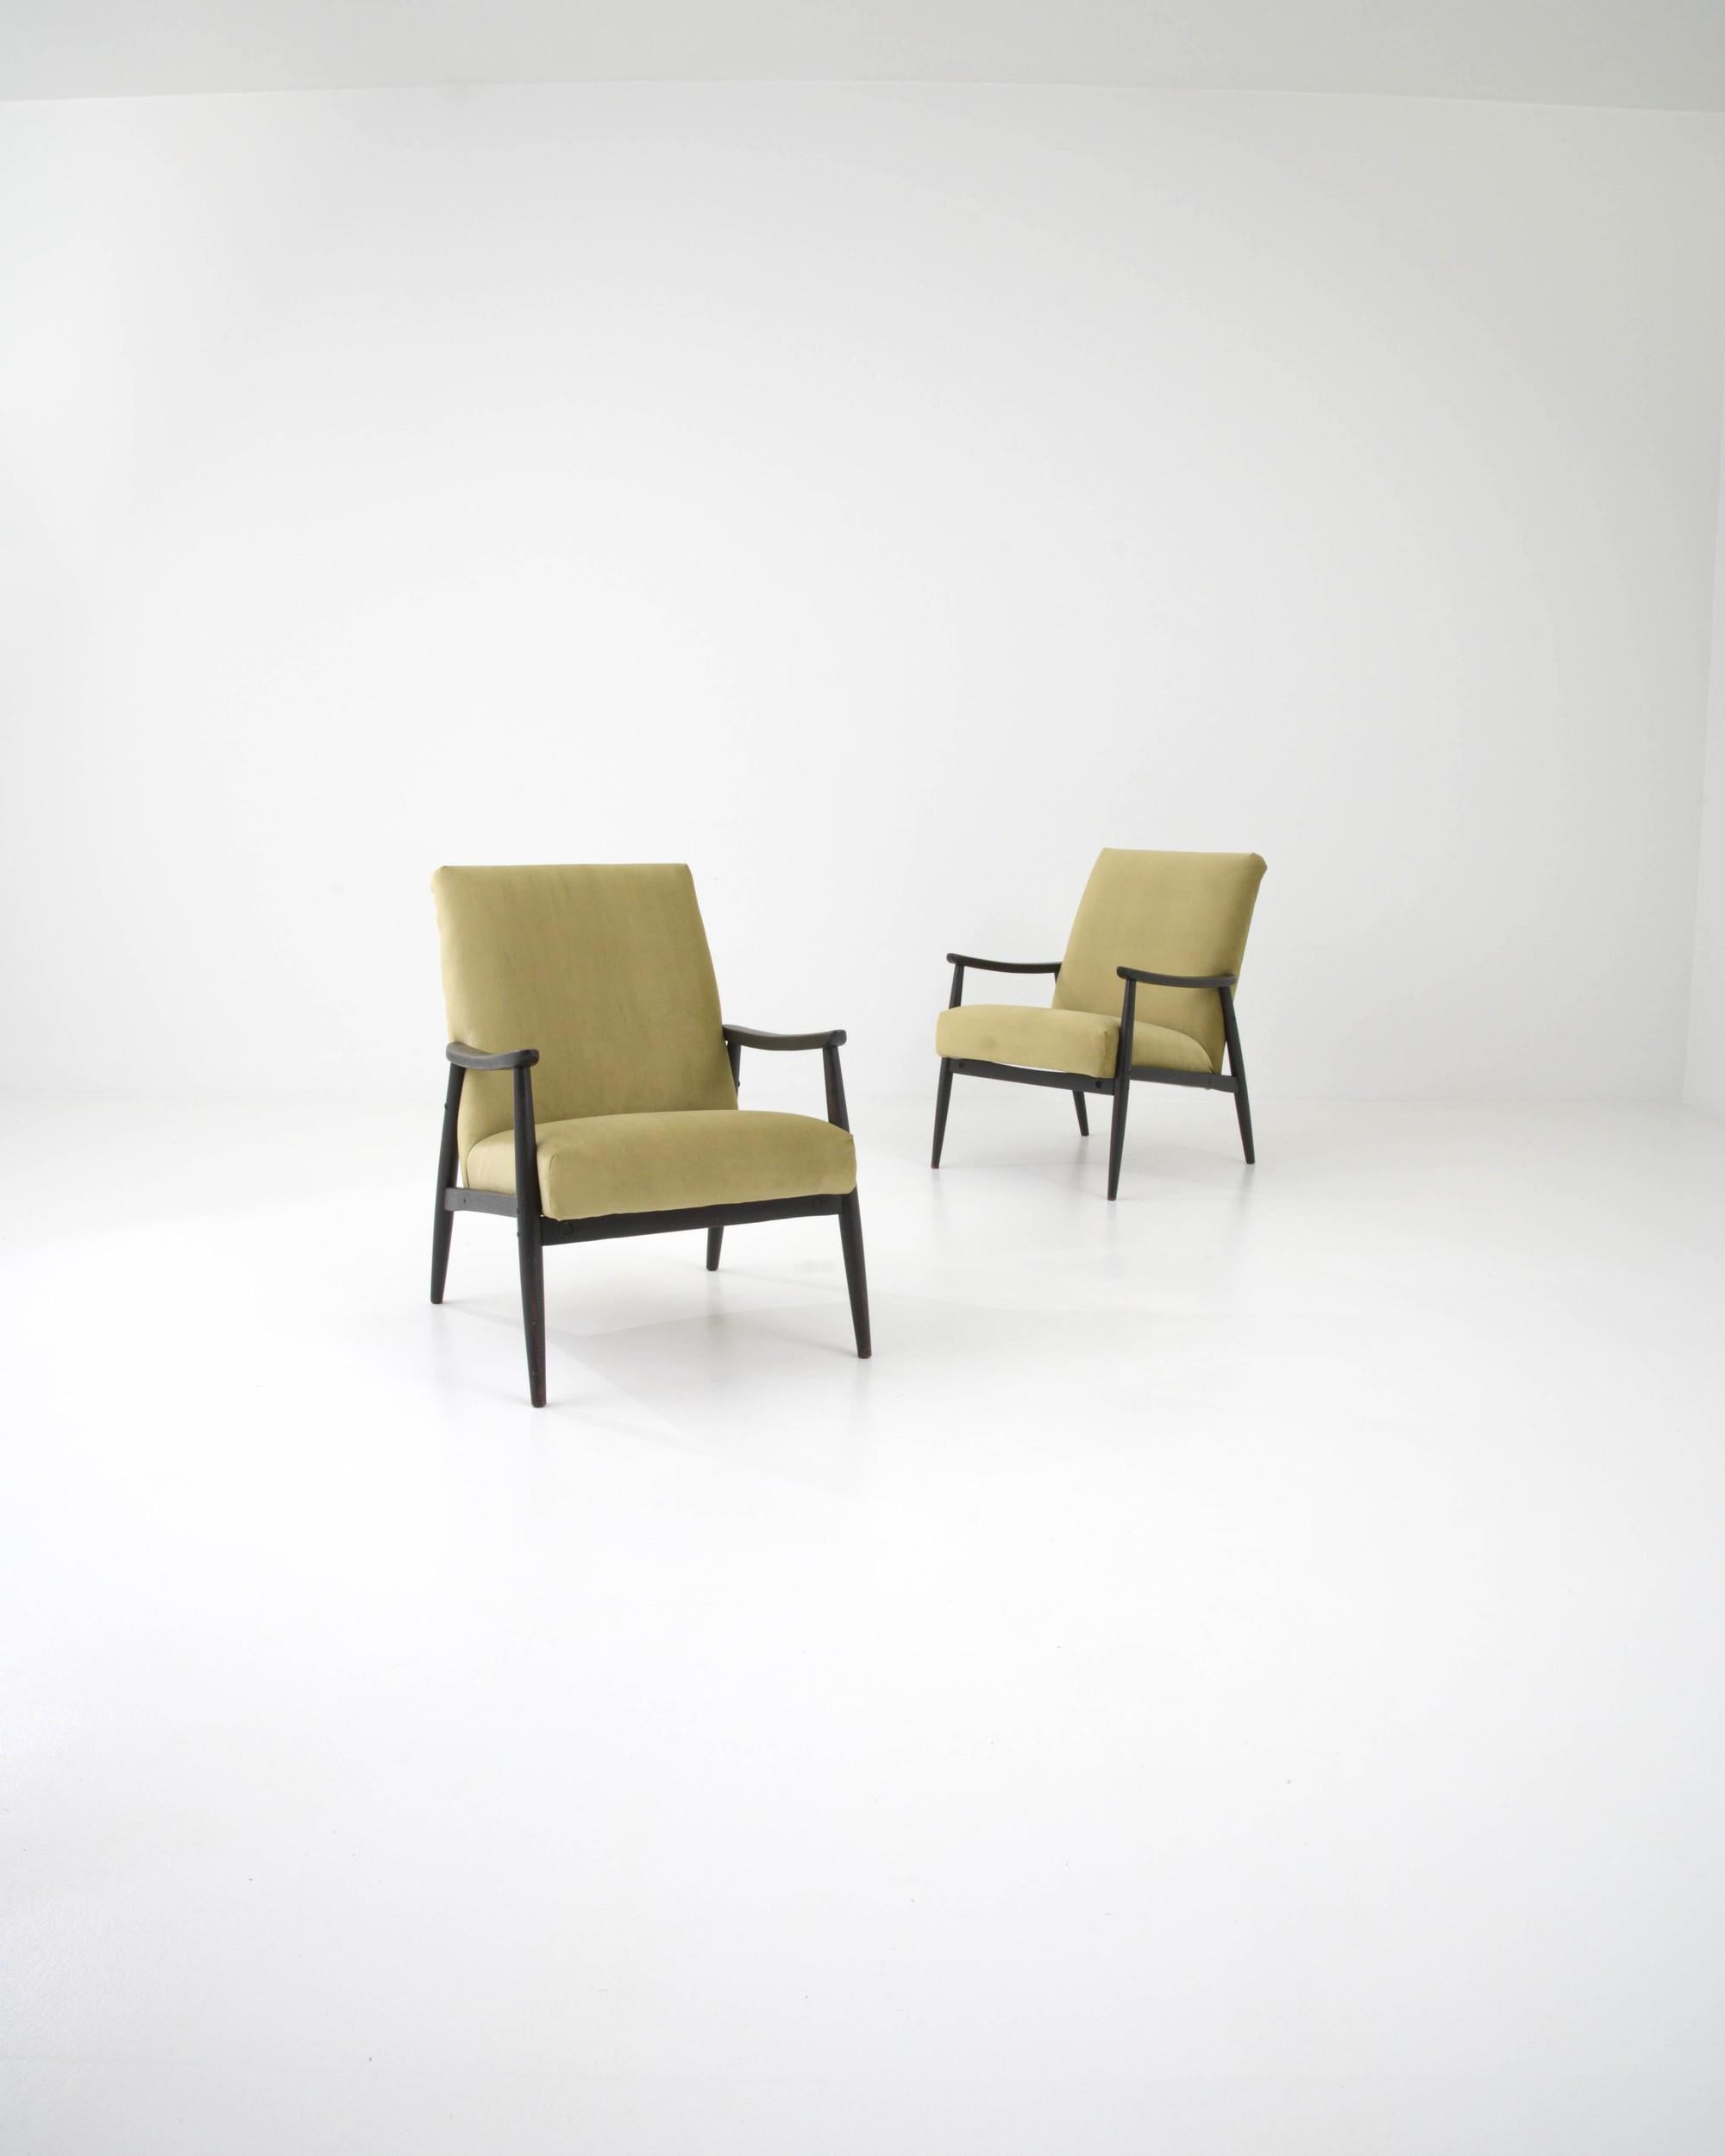 Cette paire de fauteuils tchèques des années 1960 constitue le coin idéal pour regarder le monde passer. L'assise, généreusement rembourrée et réglée sur une inclinaison invitante, semble flotter comme un nuage entre les branches du cadre en bois